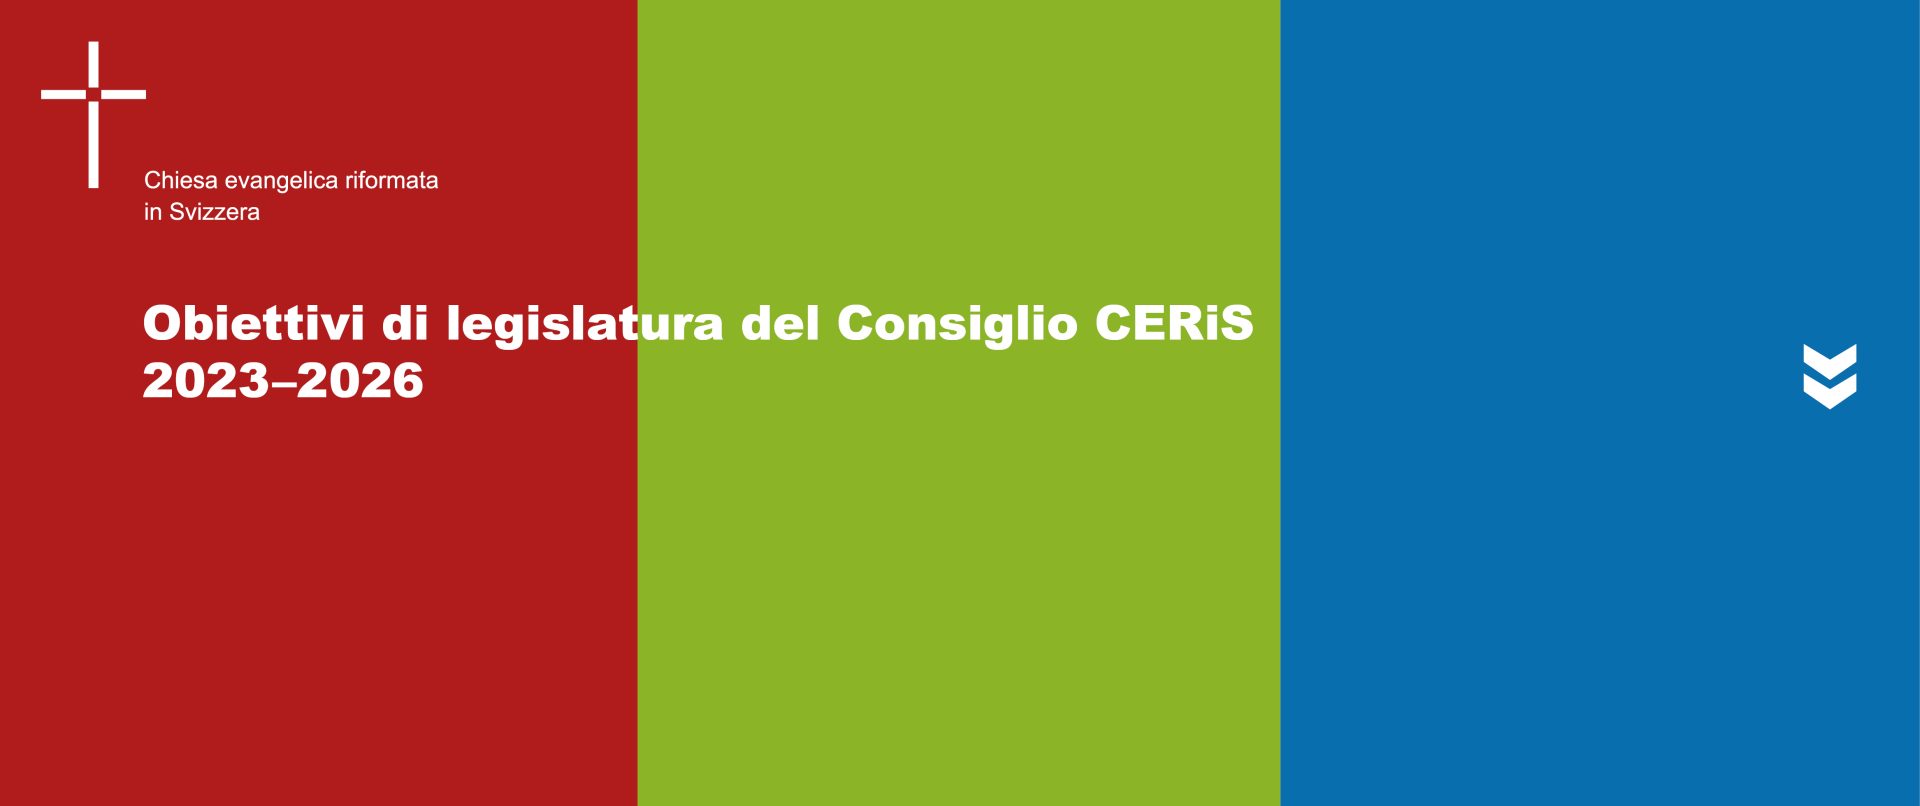 Obiettivi di legislatura del Consiglio CERiS dal 2023 al 2026